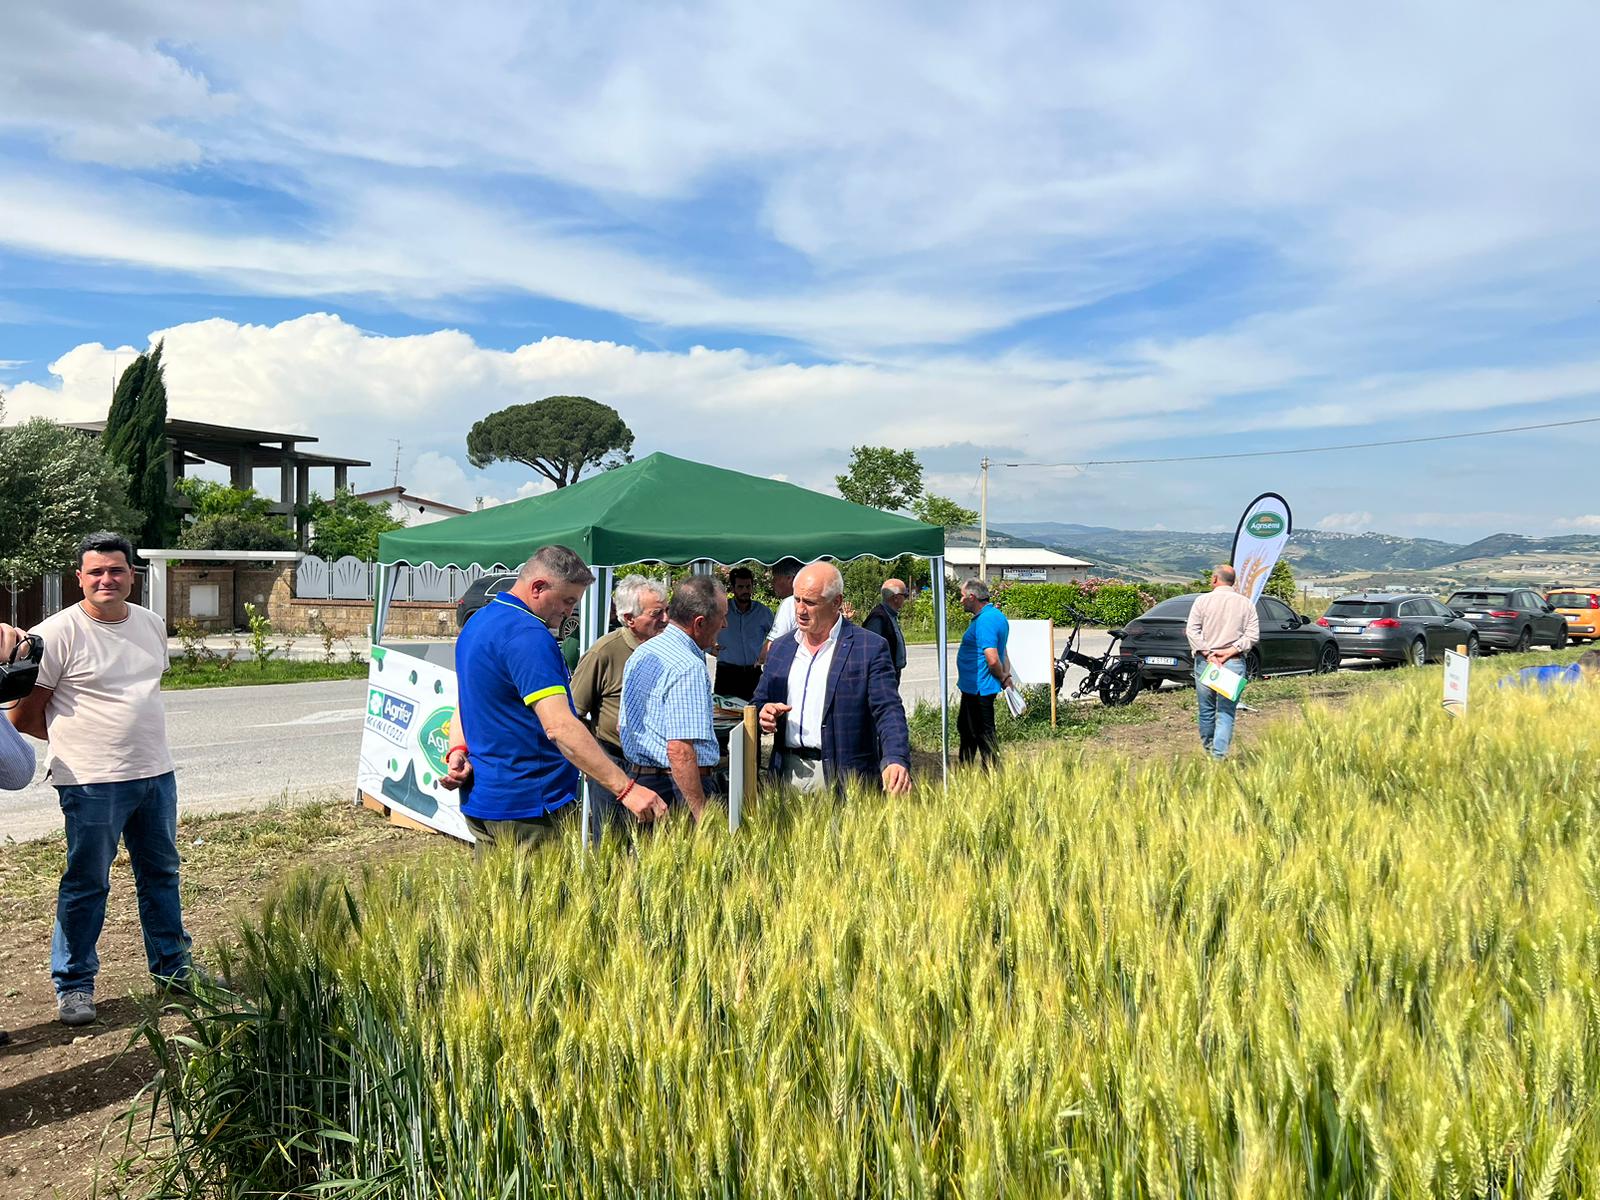 Circa 500 imprese cerealicole in campo a Benevento per la ricerca di varietà resistenti ai cambiamenti climatici